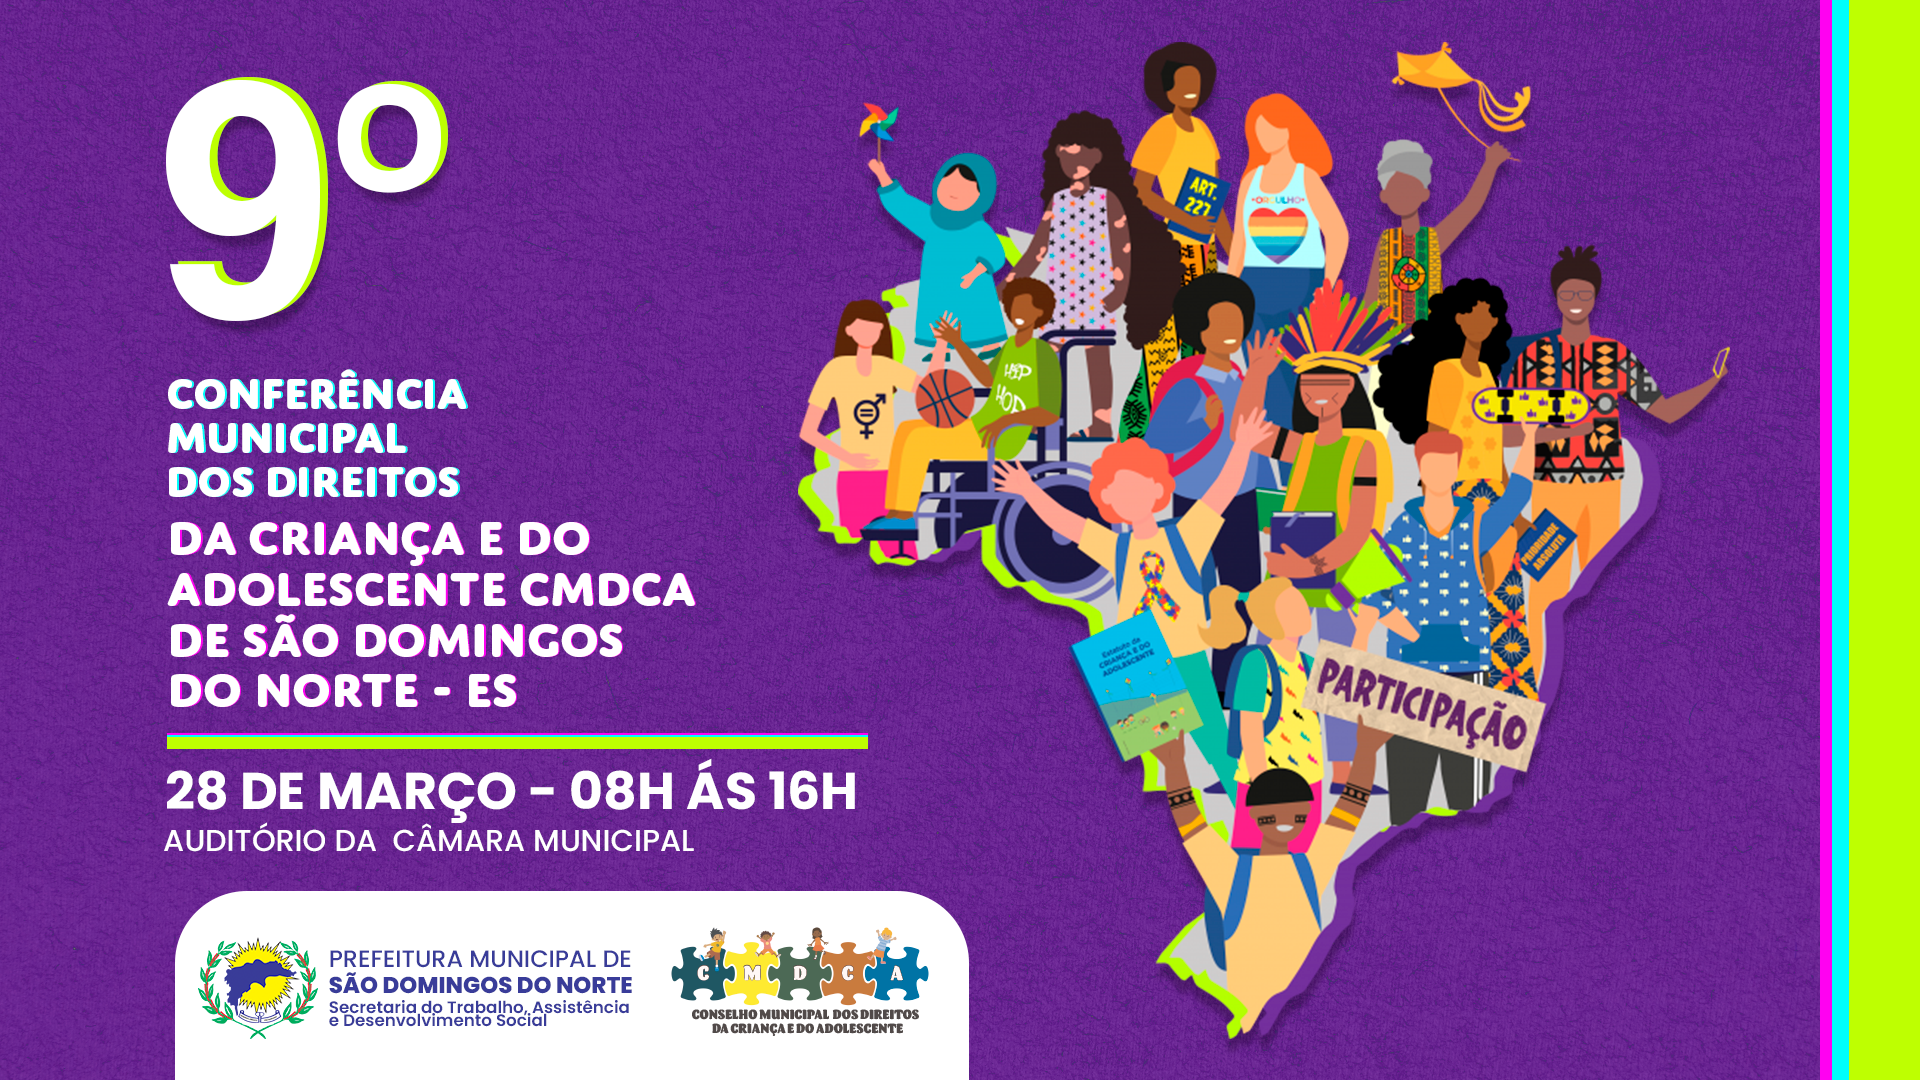 O Conselho Municipal dos Direitos da Criança e do Adolescente juntamente com a Secretaria Municipal do Trabalho, Assistencia e Desenvolvimento Social de São Domingos do Norte - ES